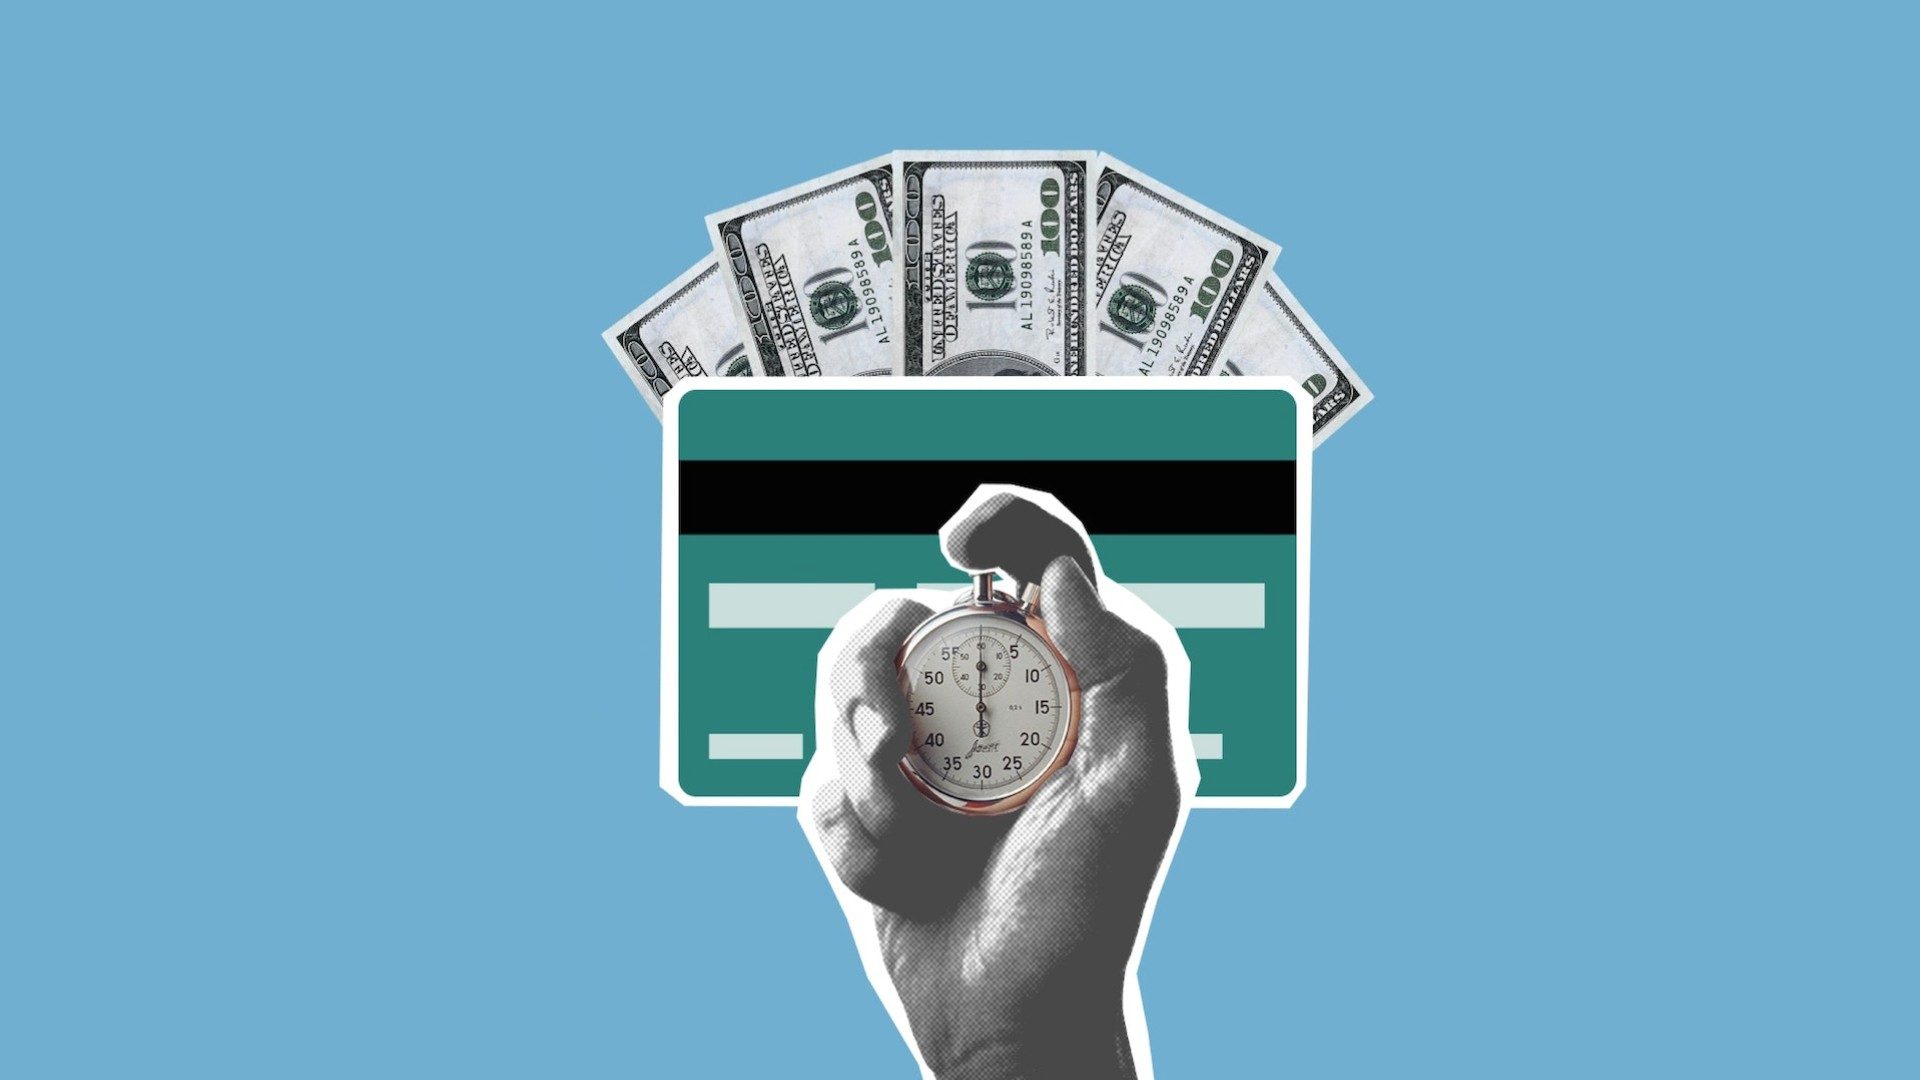 Zeit ist Geld: Illustration einer Hand mit Stoppuhr, einer Kreditkarte und Banknoten